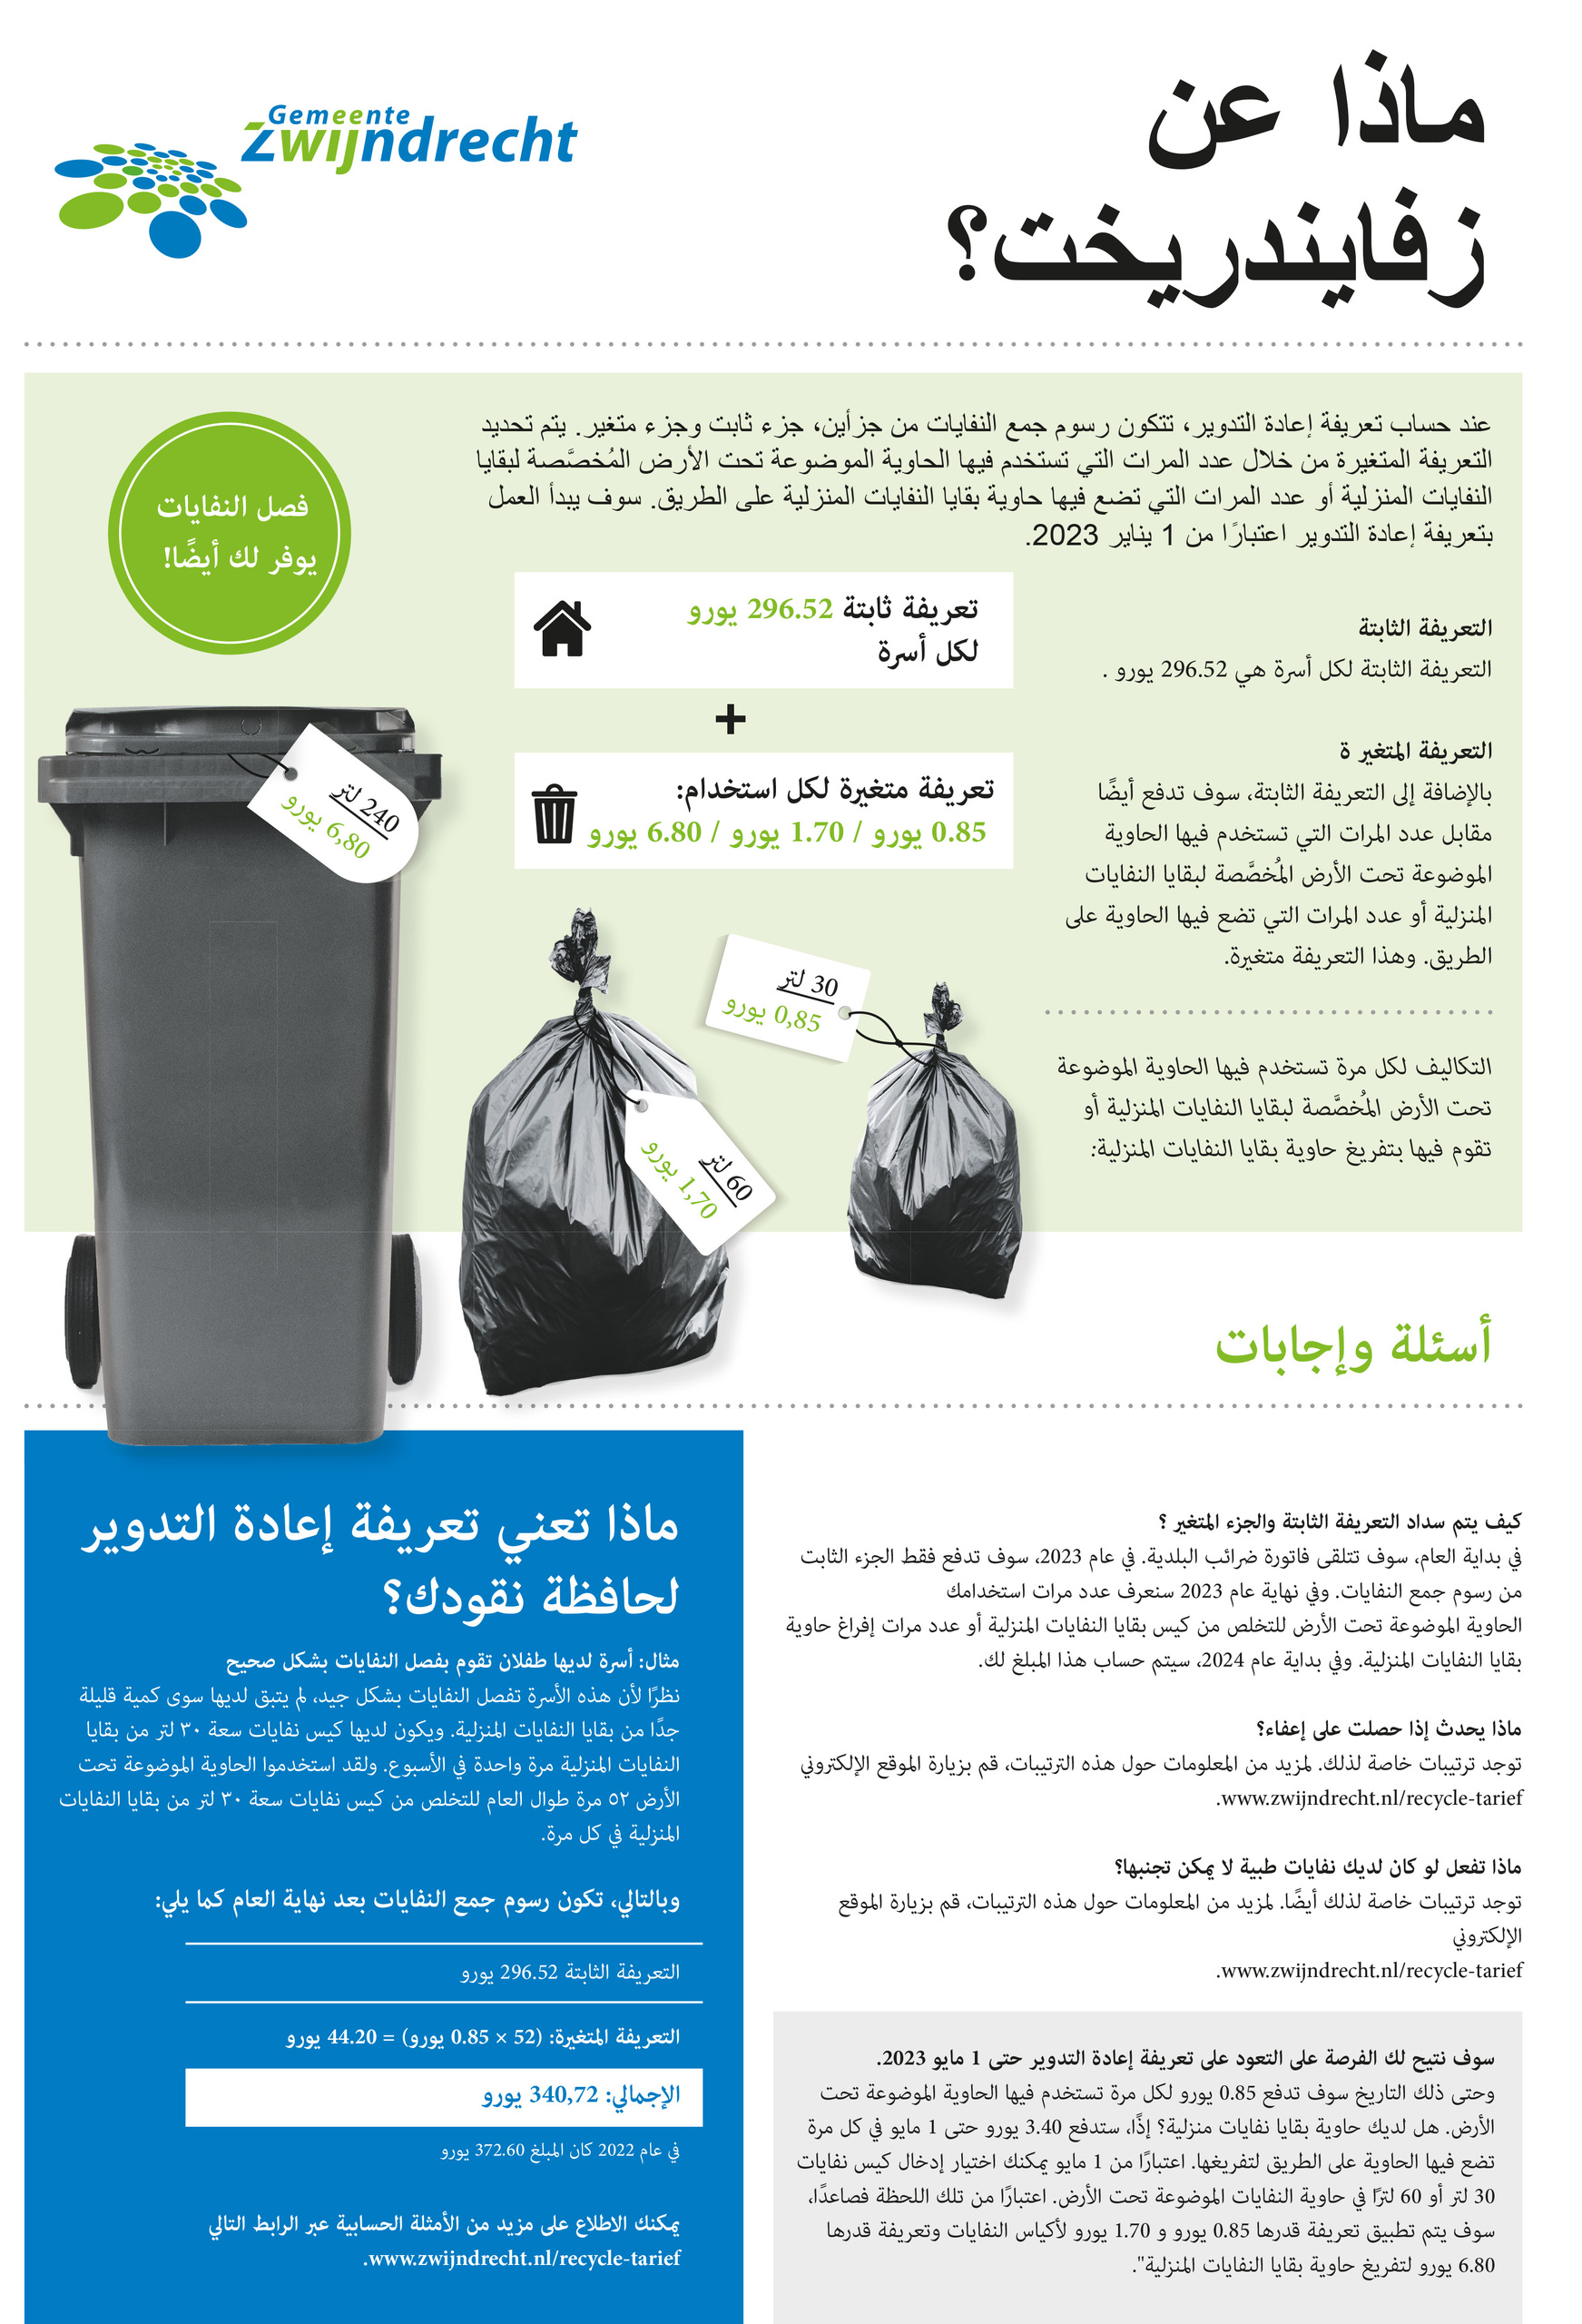 Recycle-tarieven Arabisch